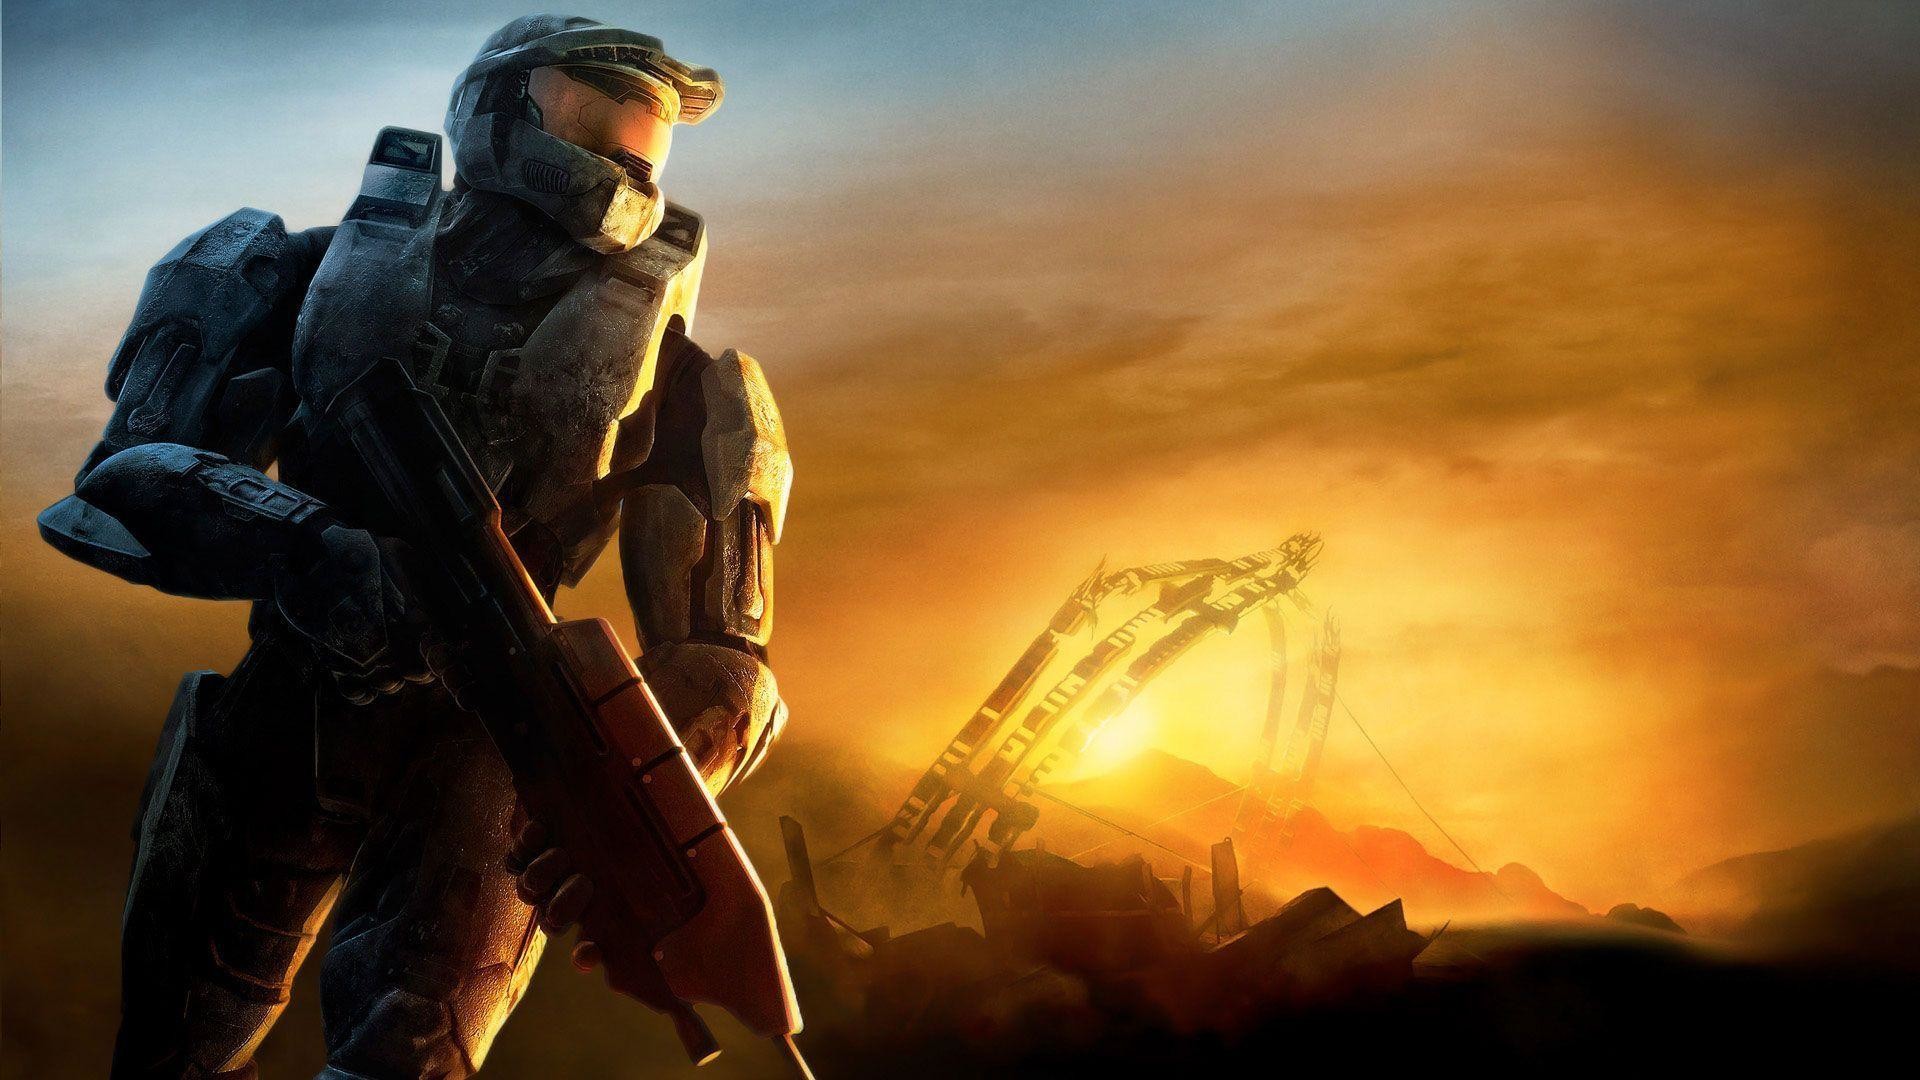 Halo 3: annunciata la data di arrivo su PC nella Master Chief Collection